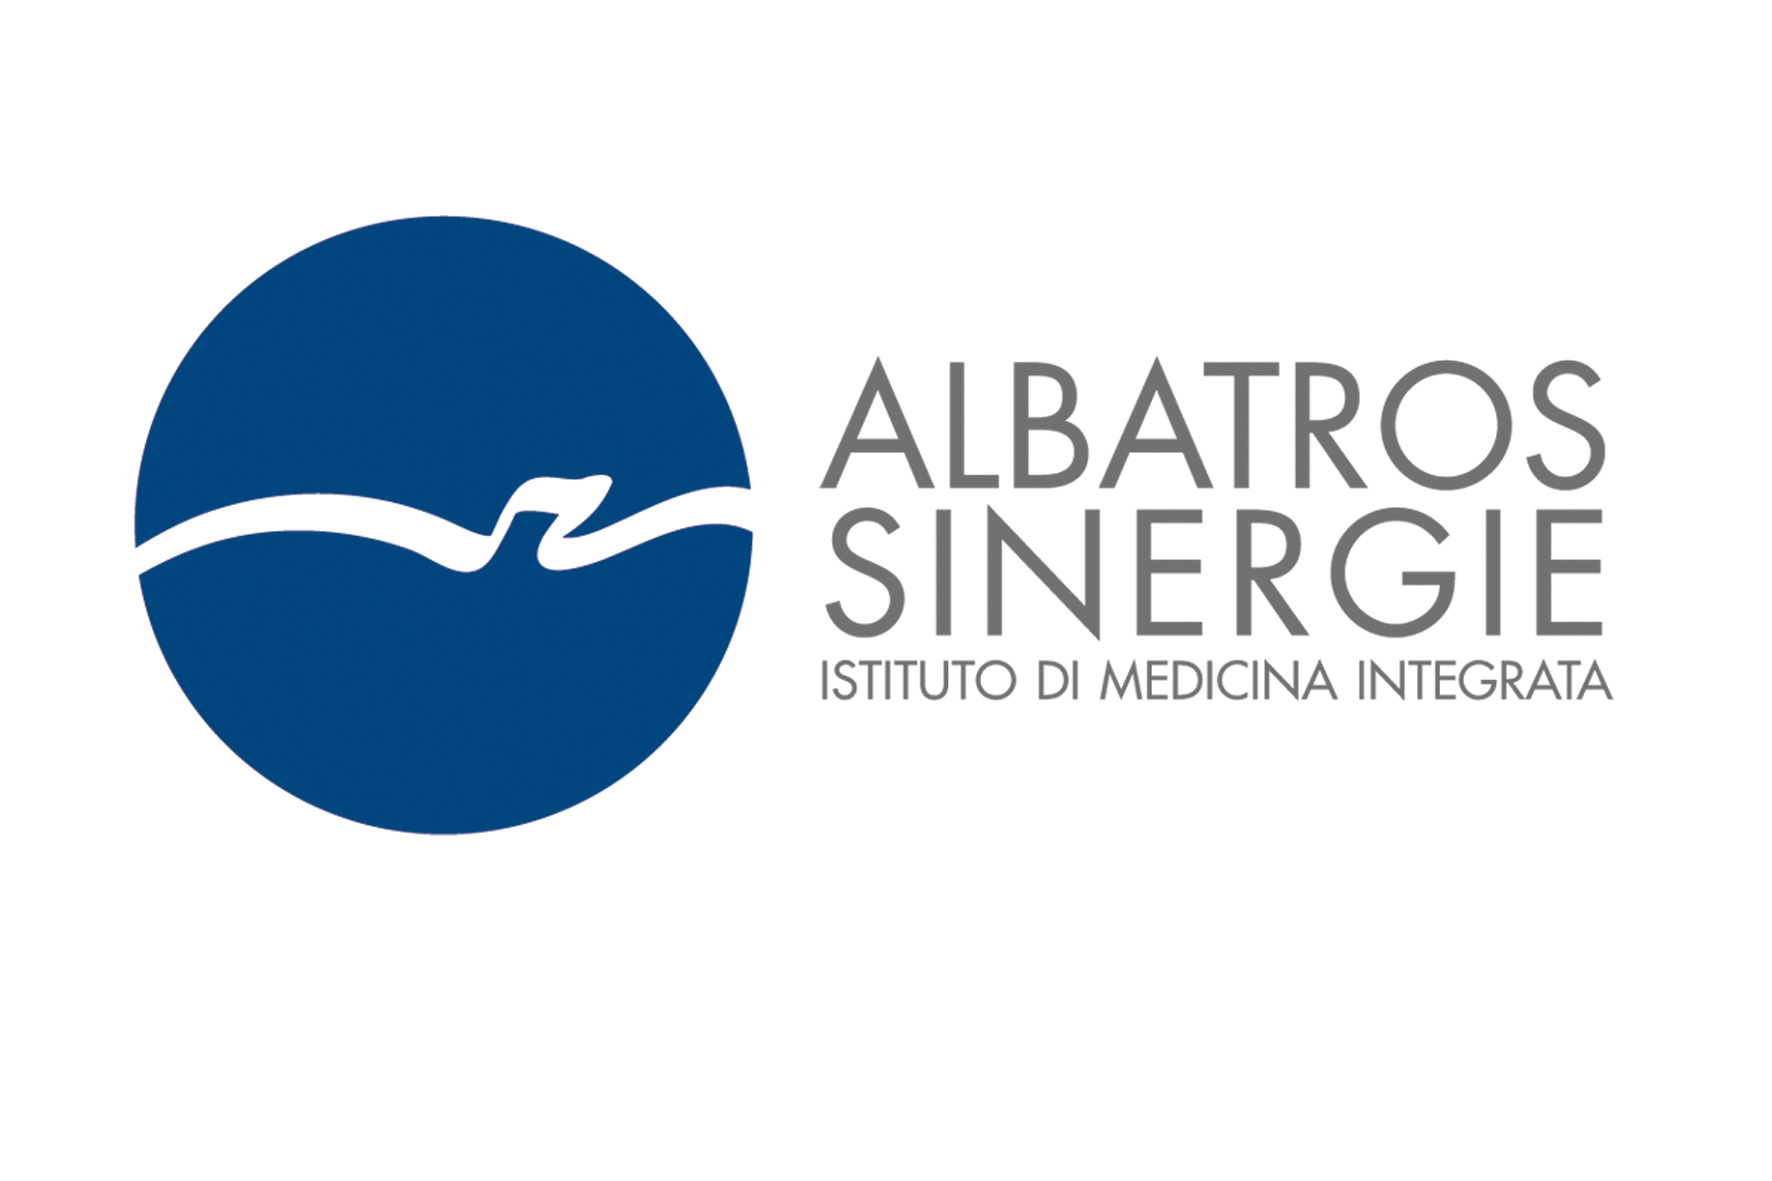 ALBATROS SINERGIE Istituto di Medicina Integrata Equipe di medici che lavorano insieme con visione unitaria dell'individuo.